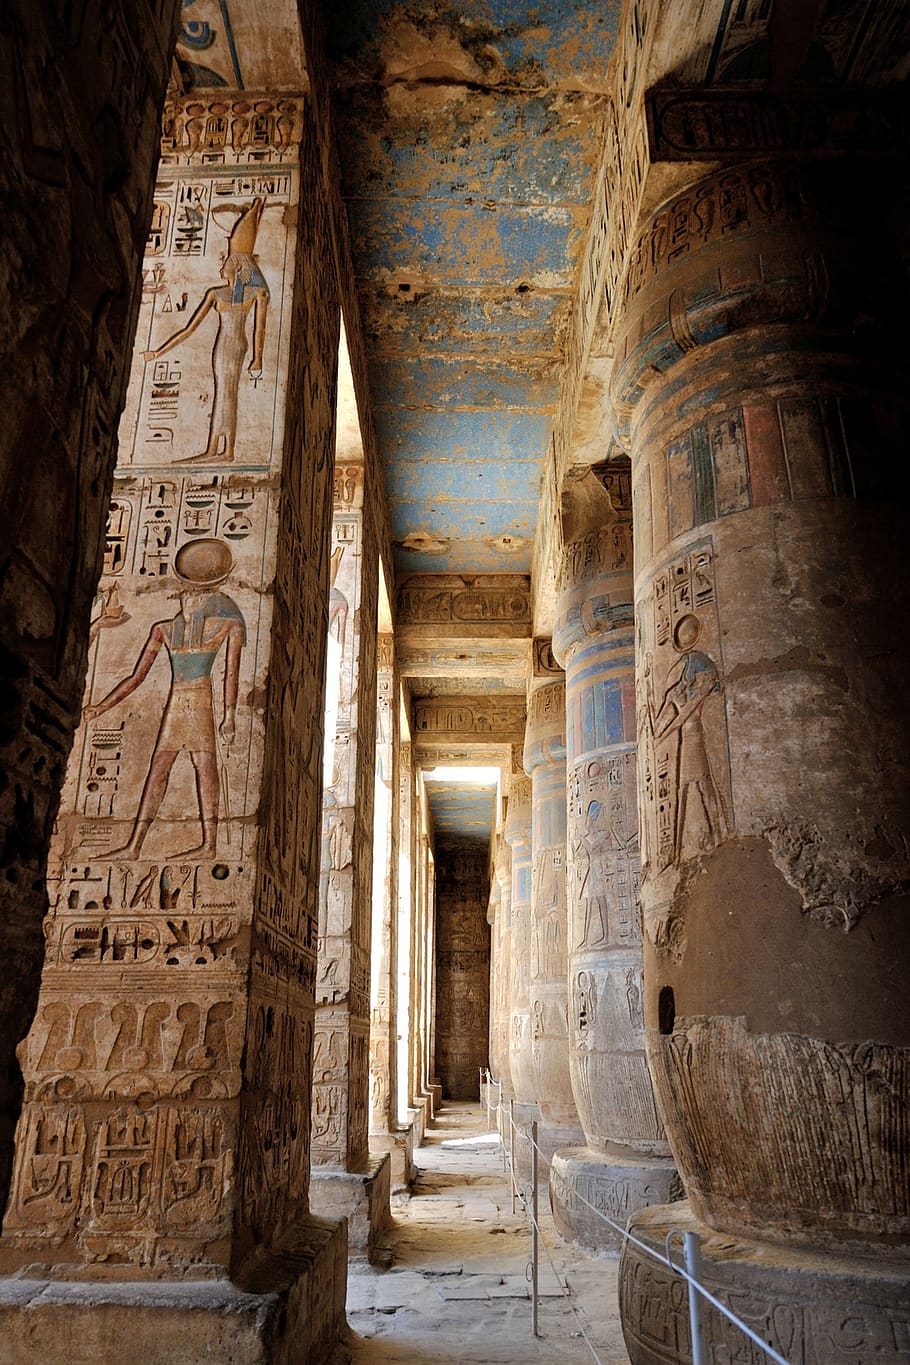 Concrete Building, ancient, architecture, columns, egypt, Hieroglphys